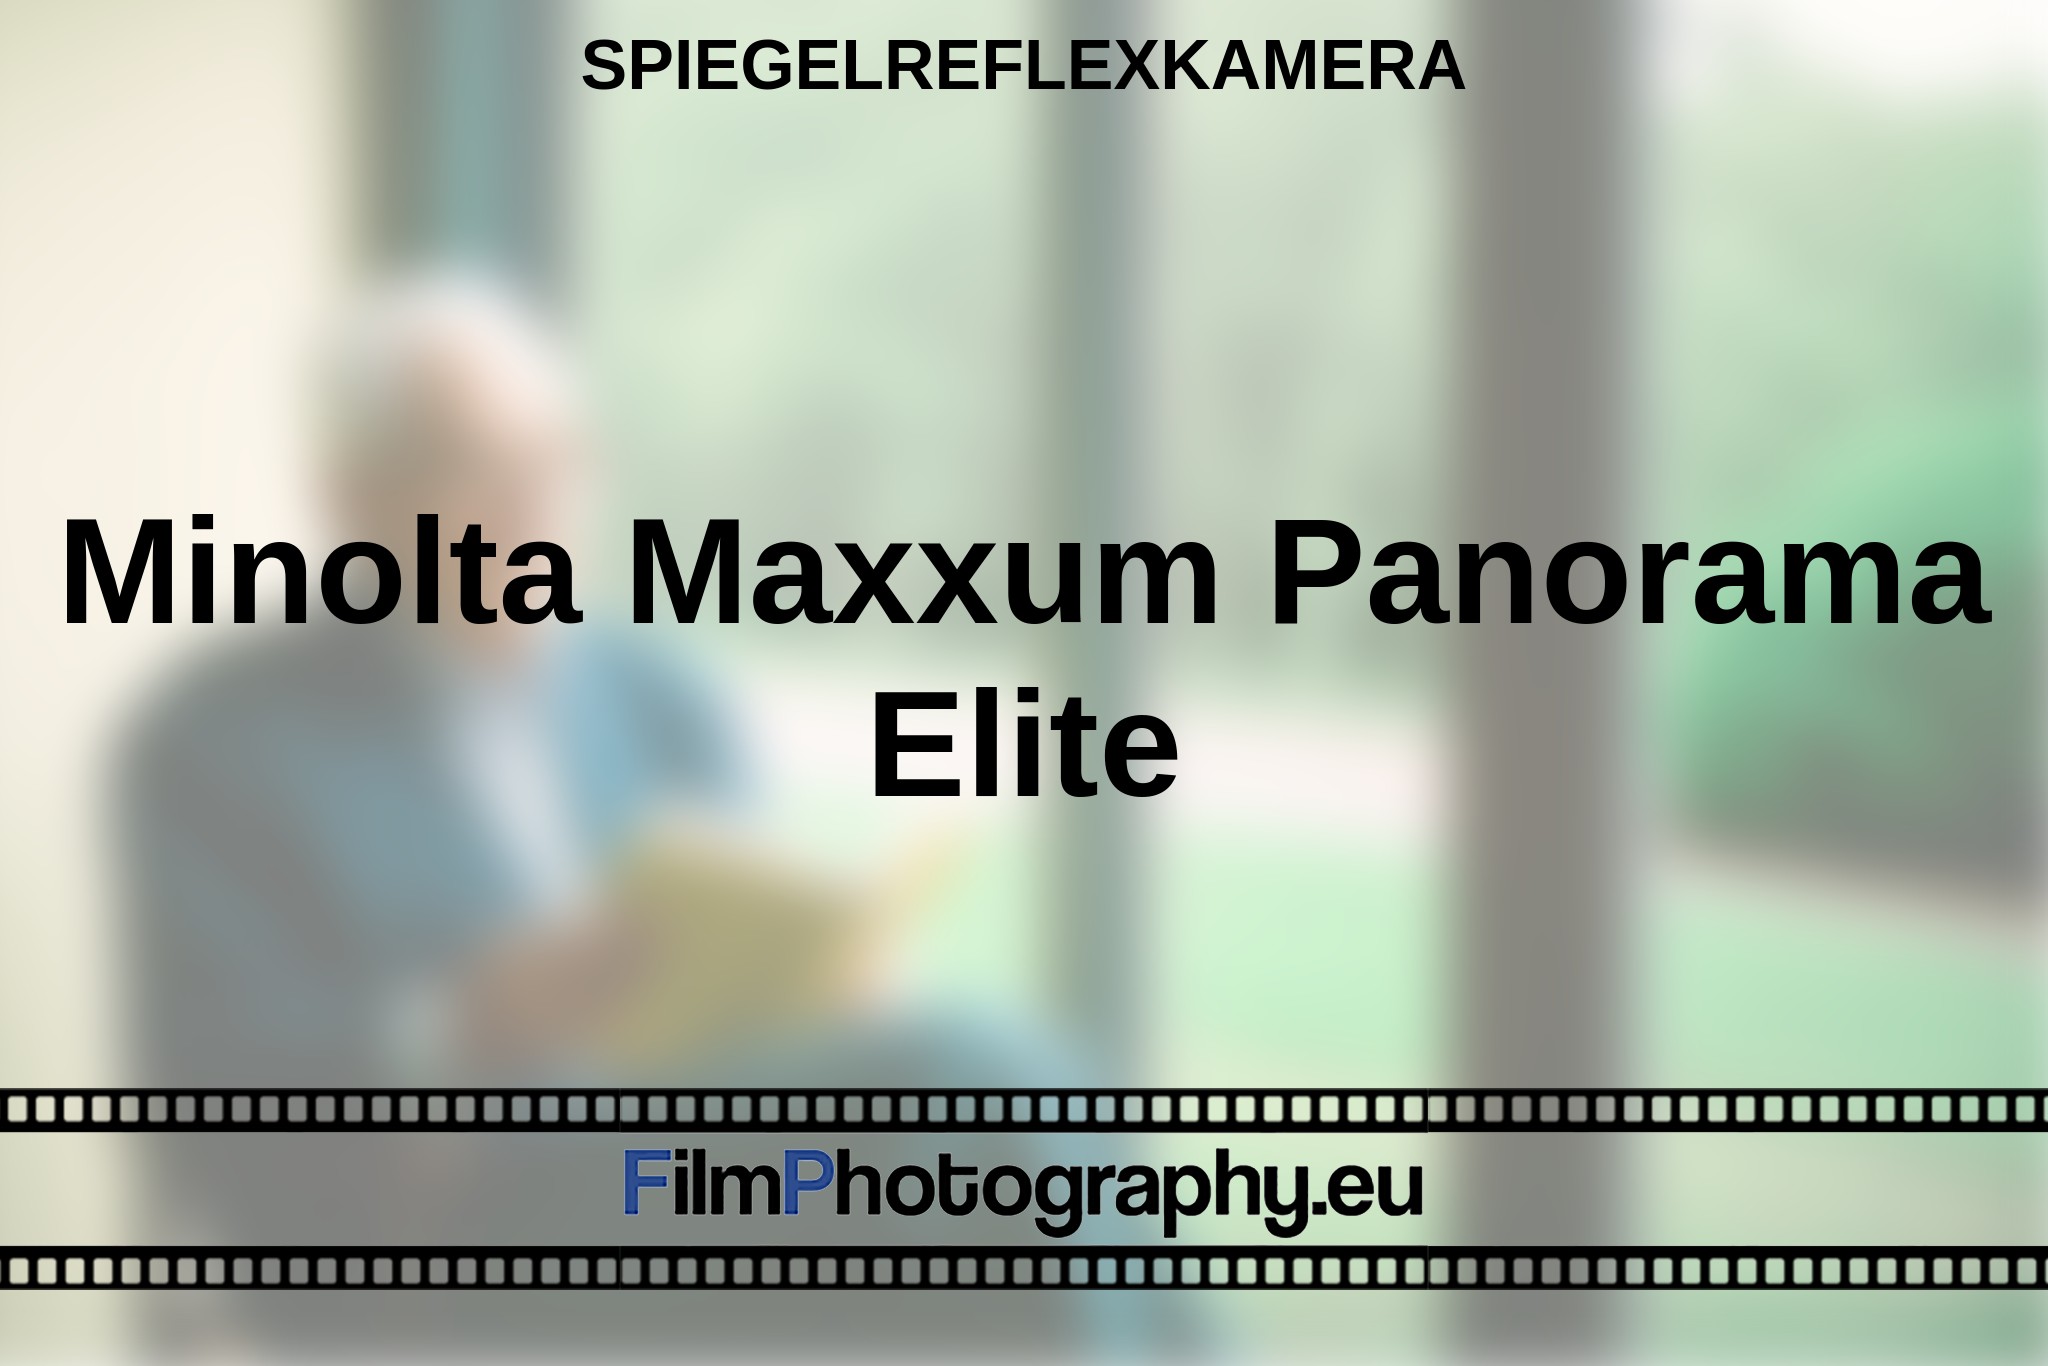 minolta-maxxum-panorama-elite-spiegelreflexkamera-bnv.jpg